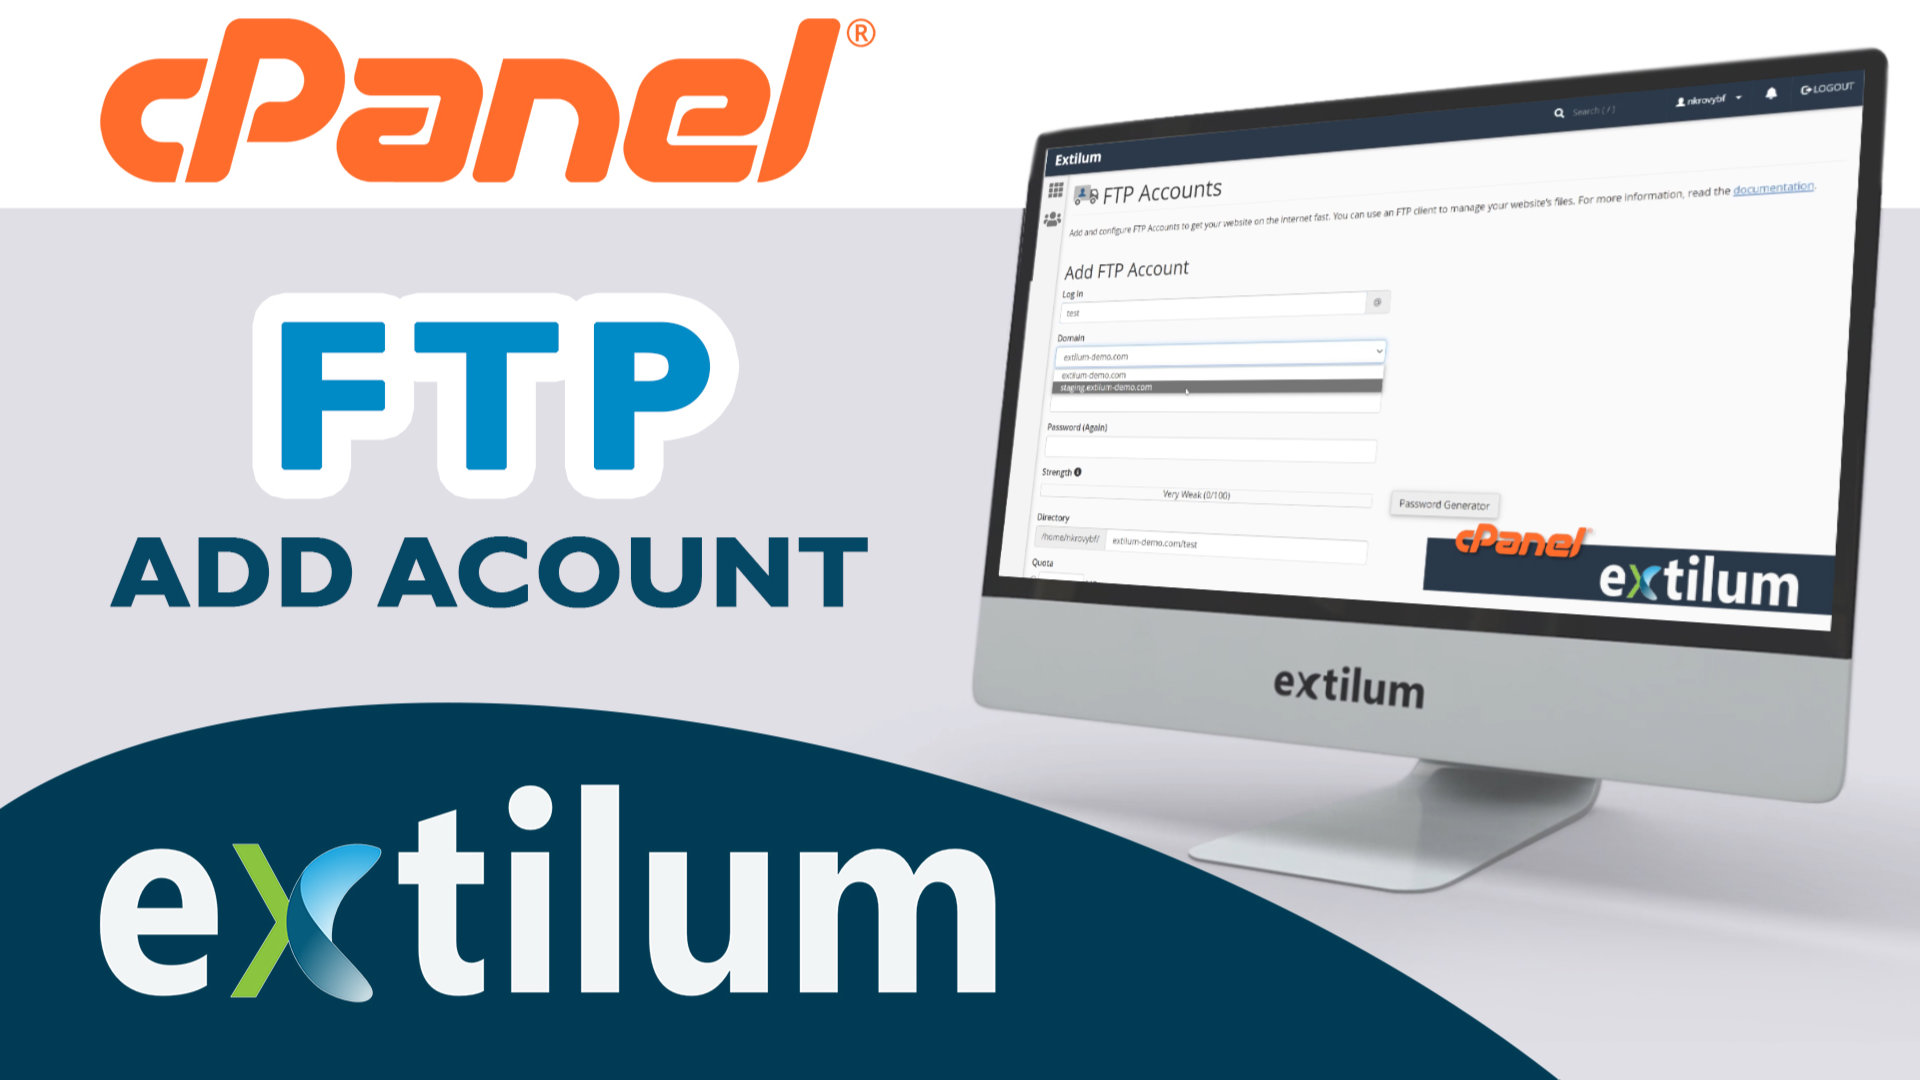 Extilum cpanel - add ftp account